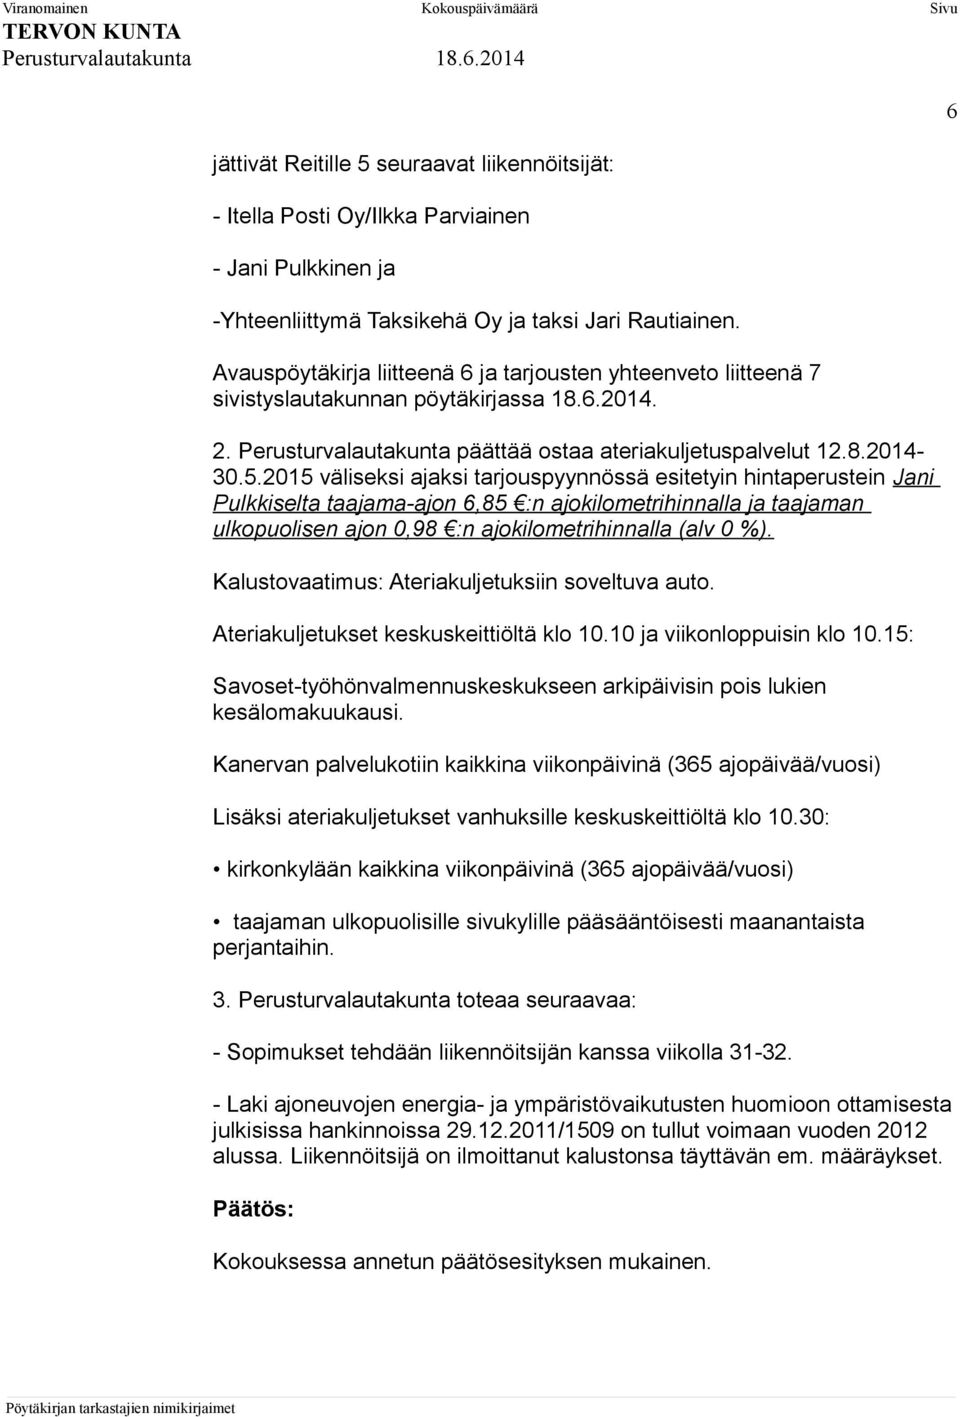 2015 väliseksi ajaksi tarjouspyynnössä esitetyin hintaperustein Jani Pulkkiselta taajama-ajon 6,85 :n ajokilometrihinnalla ja taajaman ulkopuolisen ajon 0,98 :n ajokilometrihinnalla (alv 0 %).